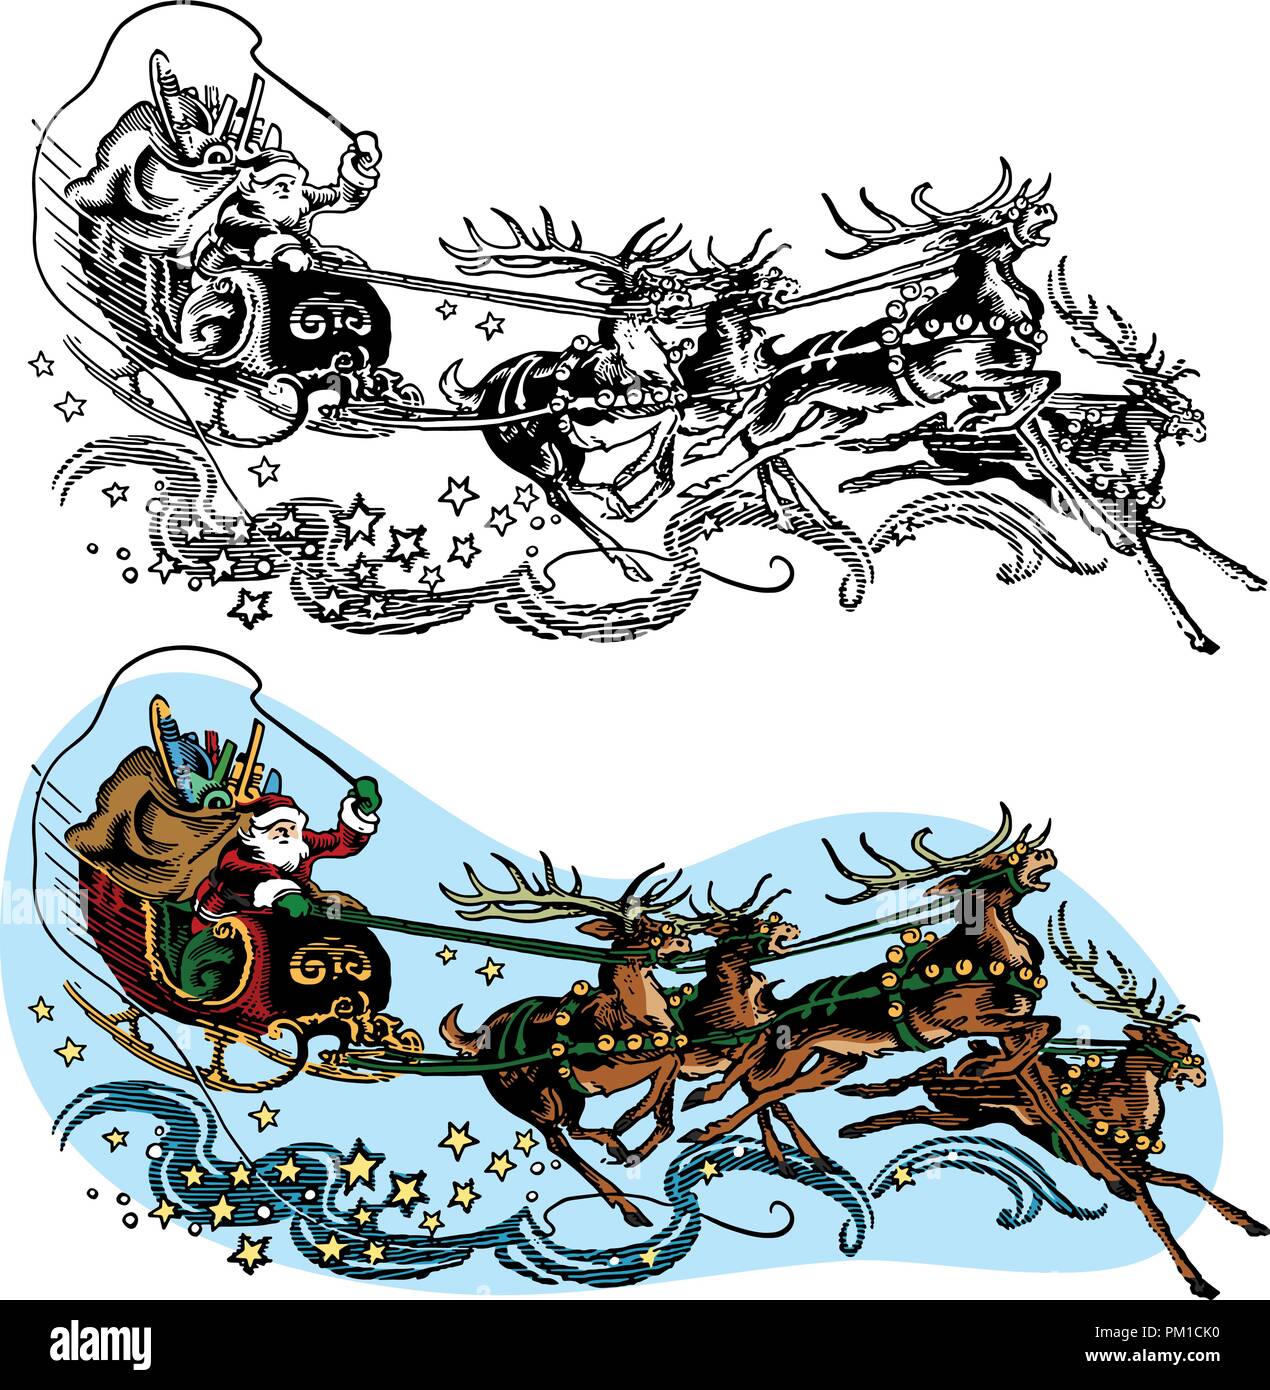 Babbo Natale vola nella sua slitta trainata dalla sua magia renne alla vigilia di Natale. Illustrazione Vettoriale